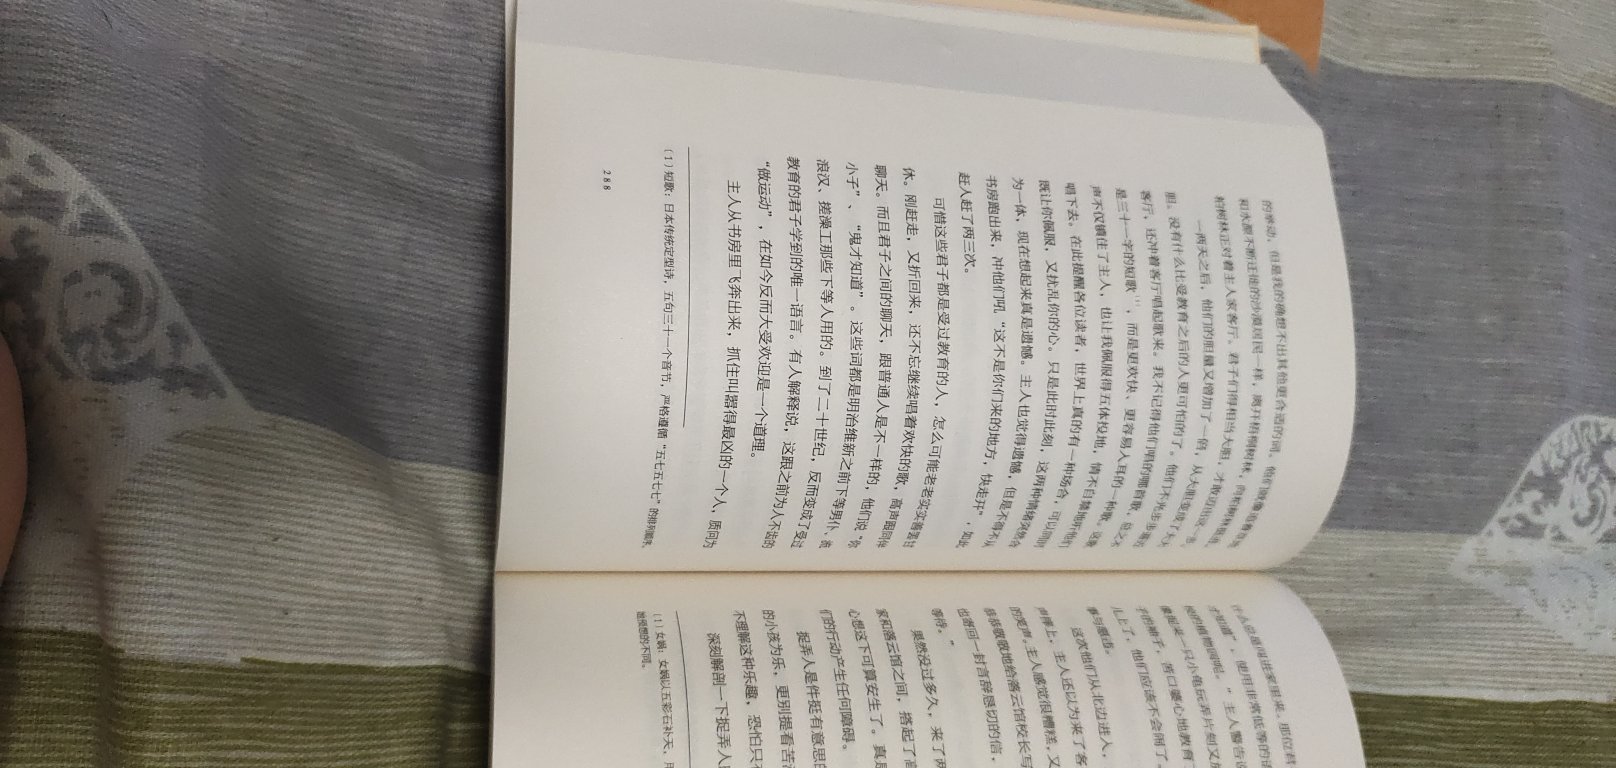 每每读起这些大家巨匠的文学作品，总觉得自己似懂非懂，文章通过一些浅显易懂的小故事像我们讲述了一个大道理，都说“书中自有黄金屋，书中自有颜如玉”，想必正是这个道理吧？对于夏目漱石的《我是猫》这篇文章来说，我解读的可能与大家也不尽相同吧，但通过各种书籍，尝世间百态，品人文兴衰也未尝不是一件有意义的事